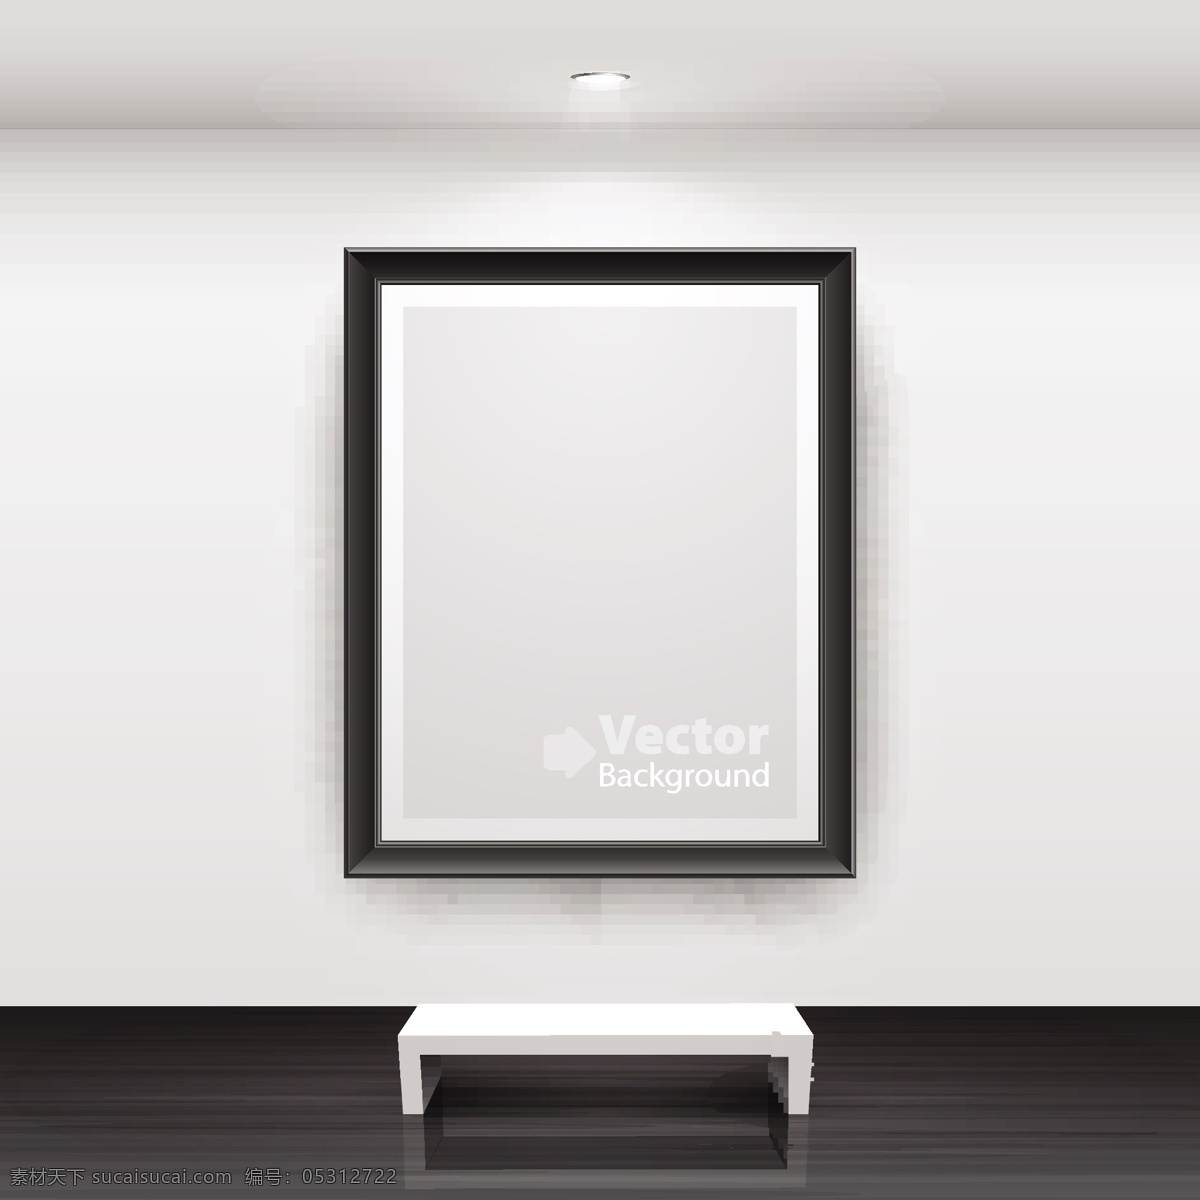 实用 画廊 模板 灯箱 广告牌 墙面 矢量素材 展览 矢量图 其他矢量图